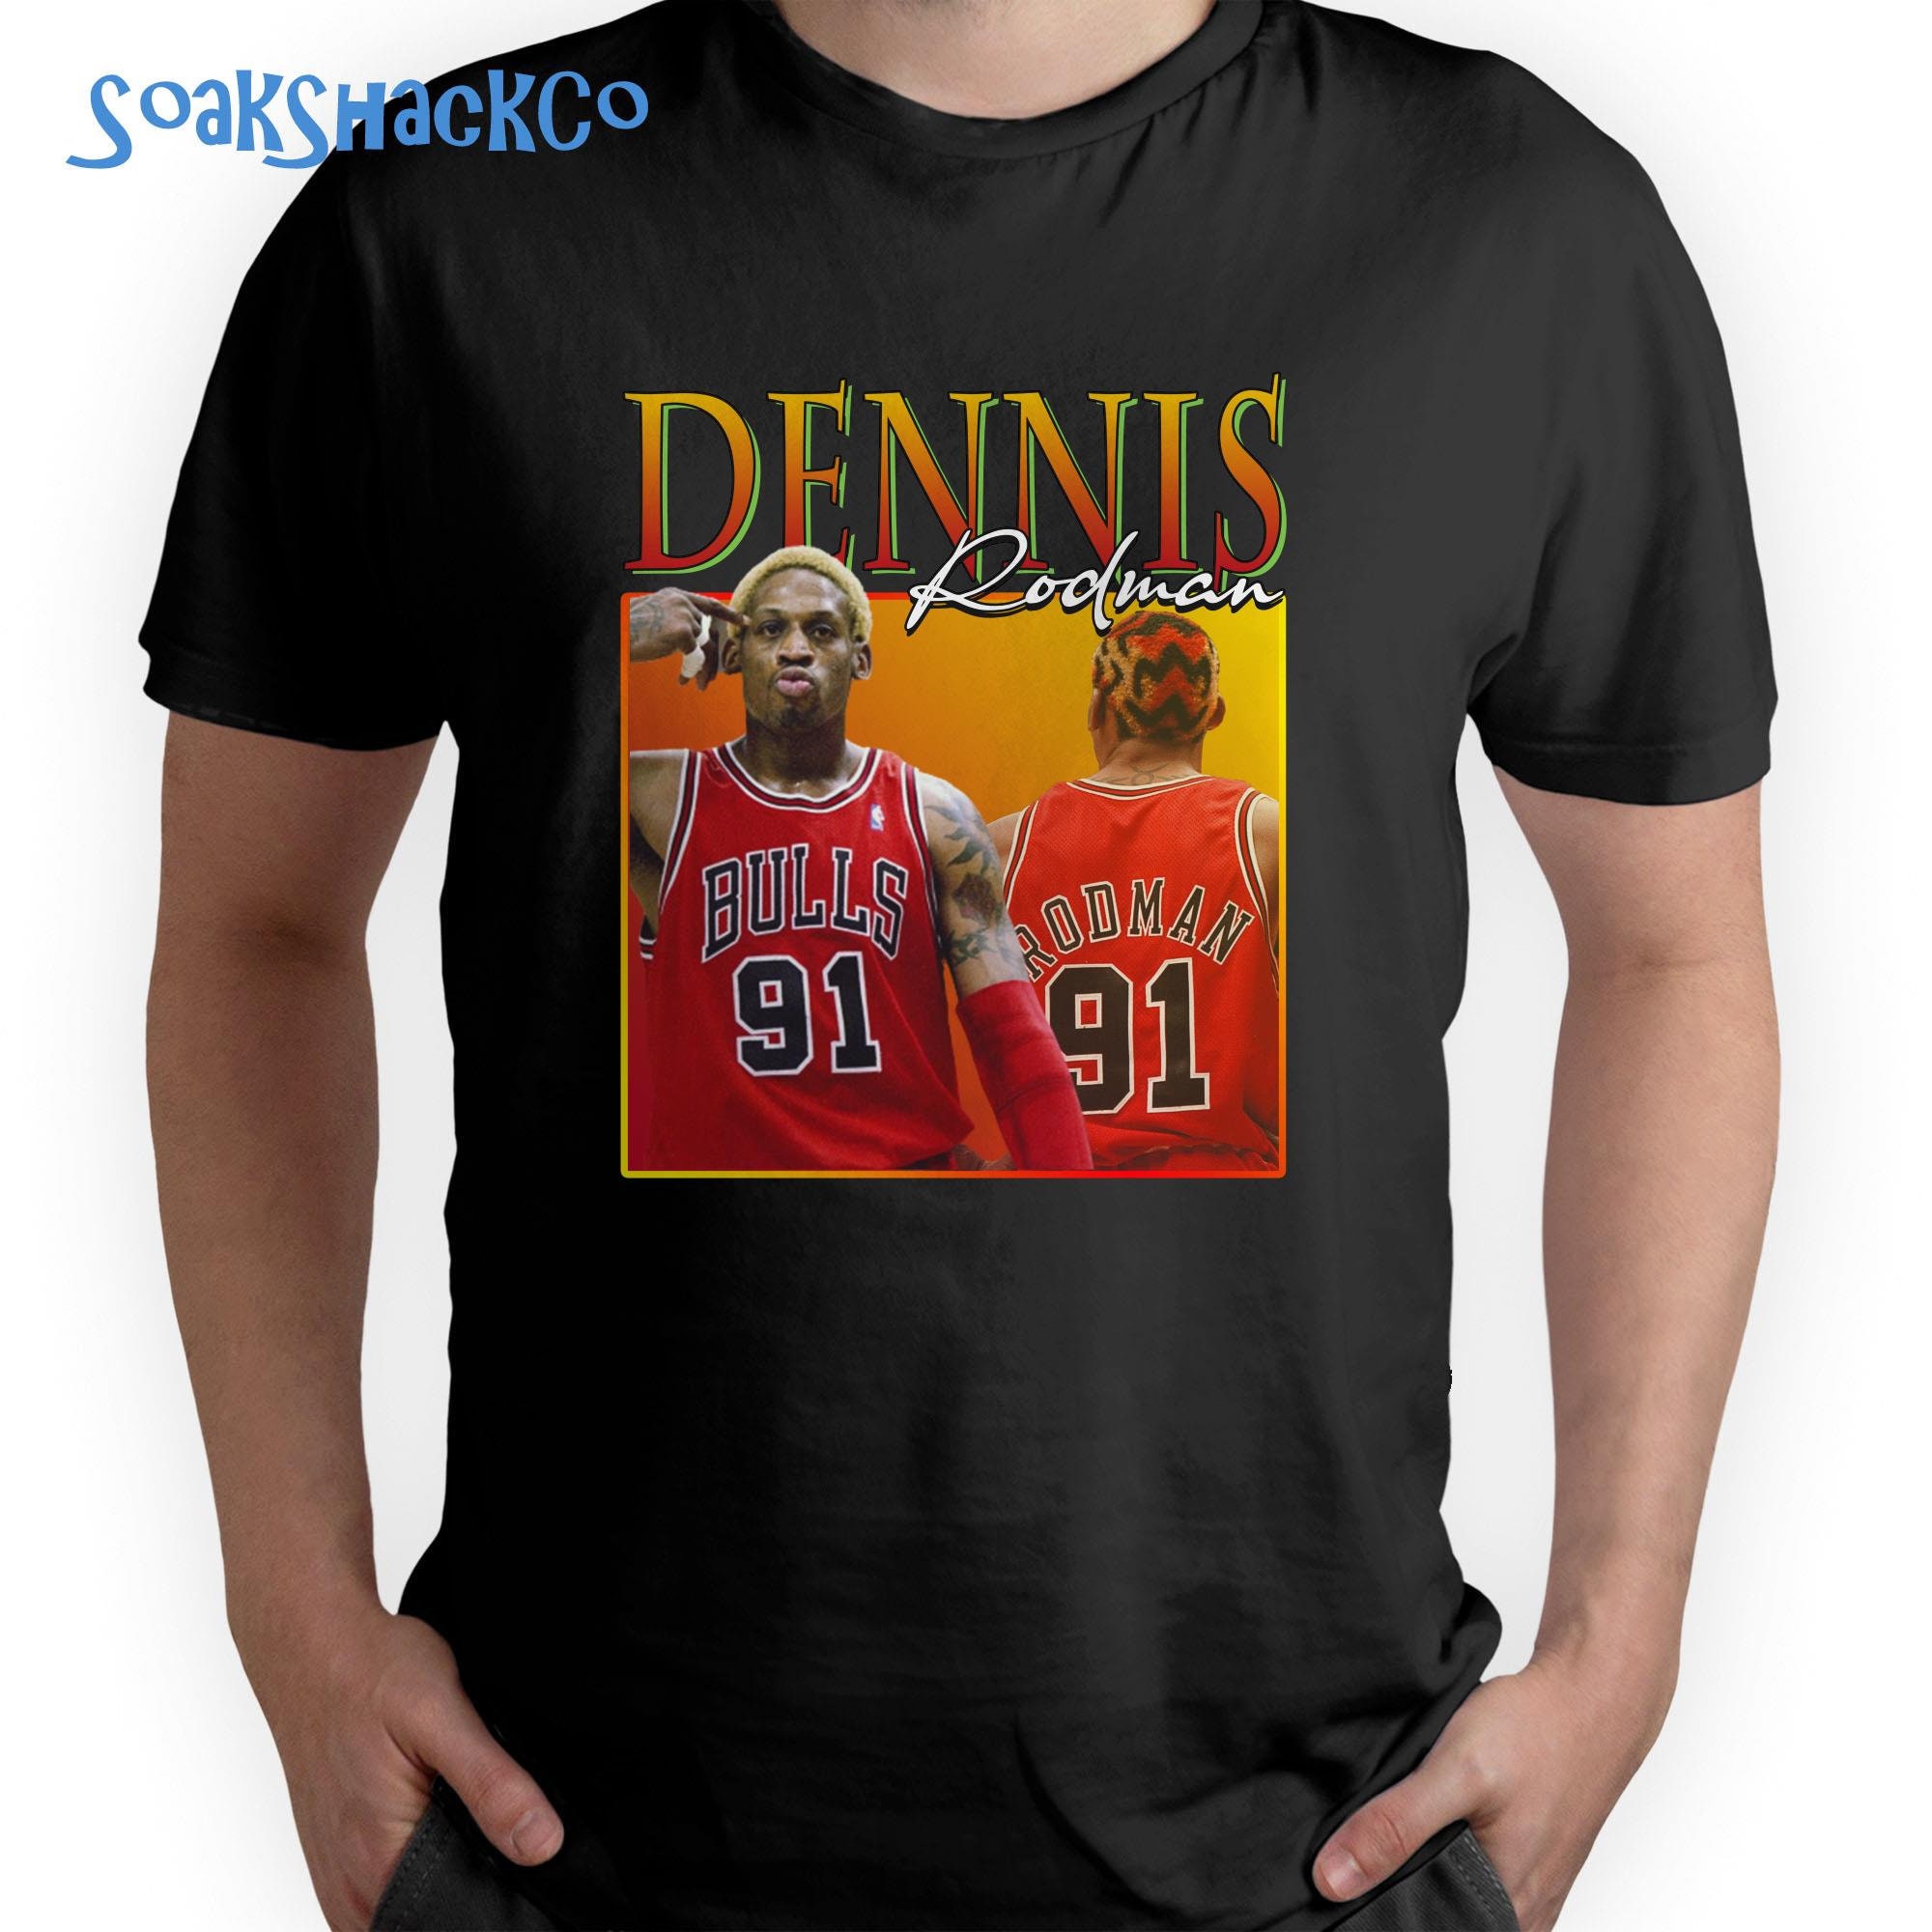 Discover Dennis Rodman Homage Shirt, Dennis Rodman T-shirt, Super Soft T-shirts